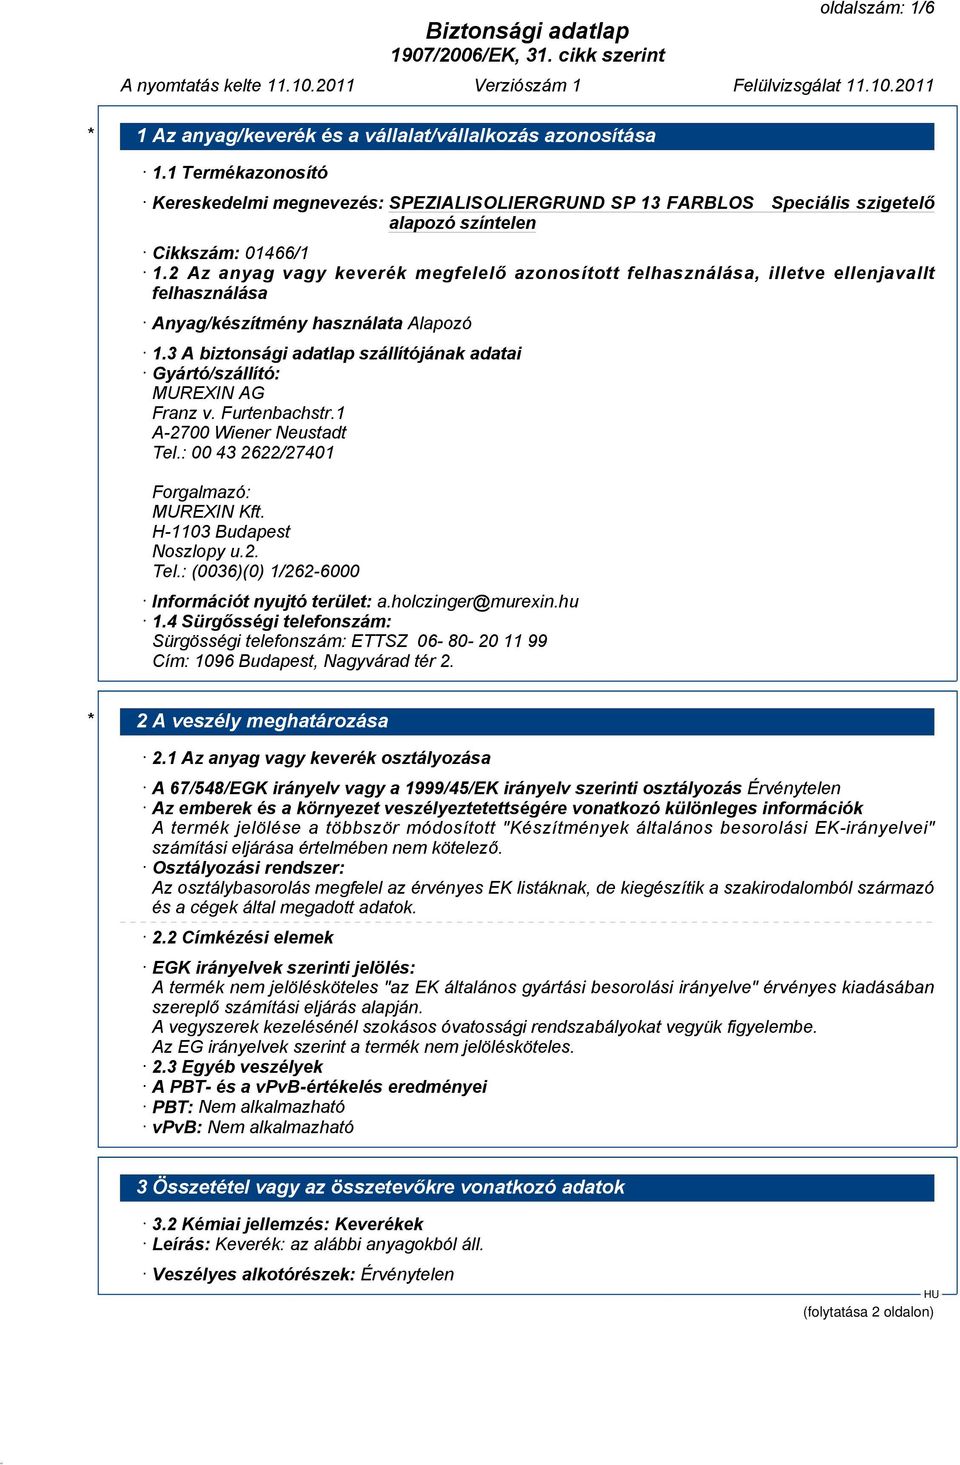 3 A biztonsági adatlap szállítójának adatai Gyártó/szállító: MUREXIN AG Franz v. Furtenbachstr.1 A-2700 Wiener Neustadt Tel.: 00 43 2622/27401 Forgalmazó: MUREXIN Kft. H-1103 Budapest Noszlopy u.2. Tel.: (0036)(0) 1/262-6000 Információt nyujtó terület: a.